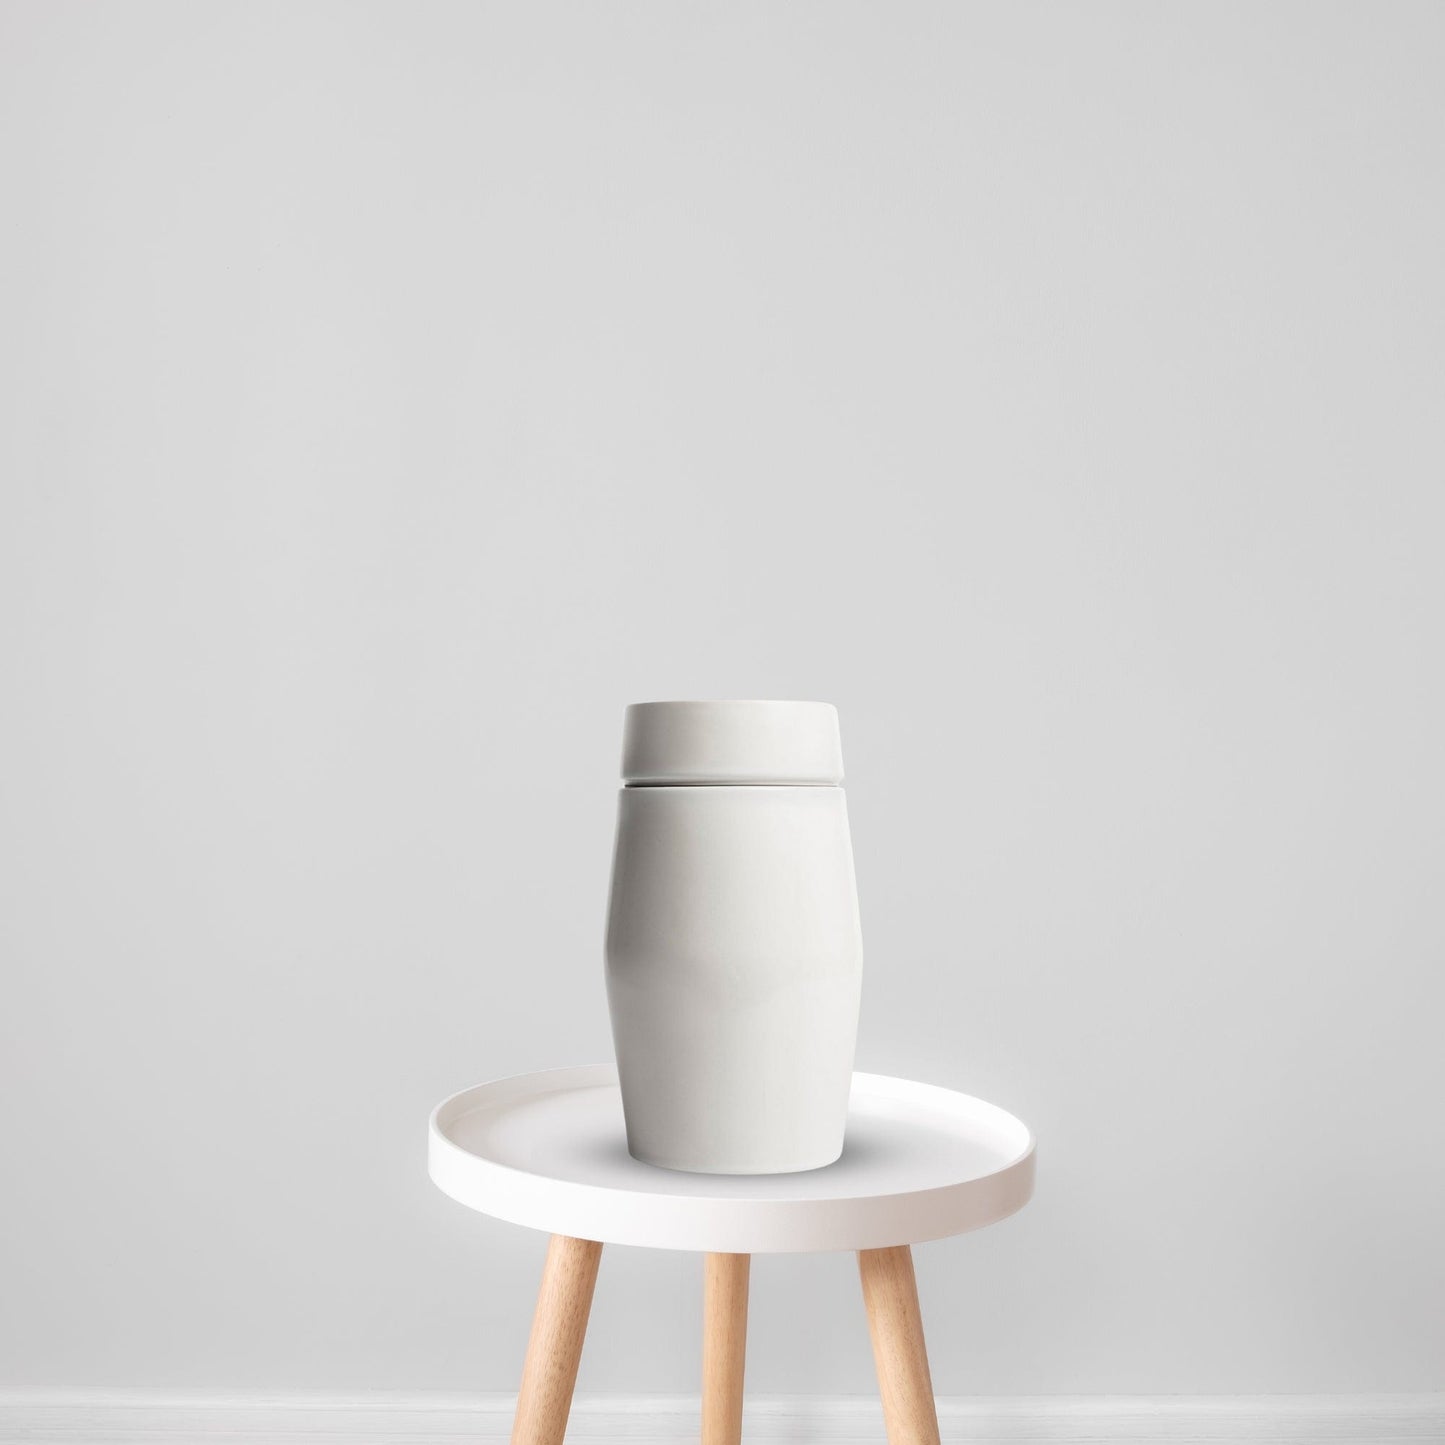 Epoch Ceramic Urn | Soft White Keepsake Urn